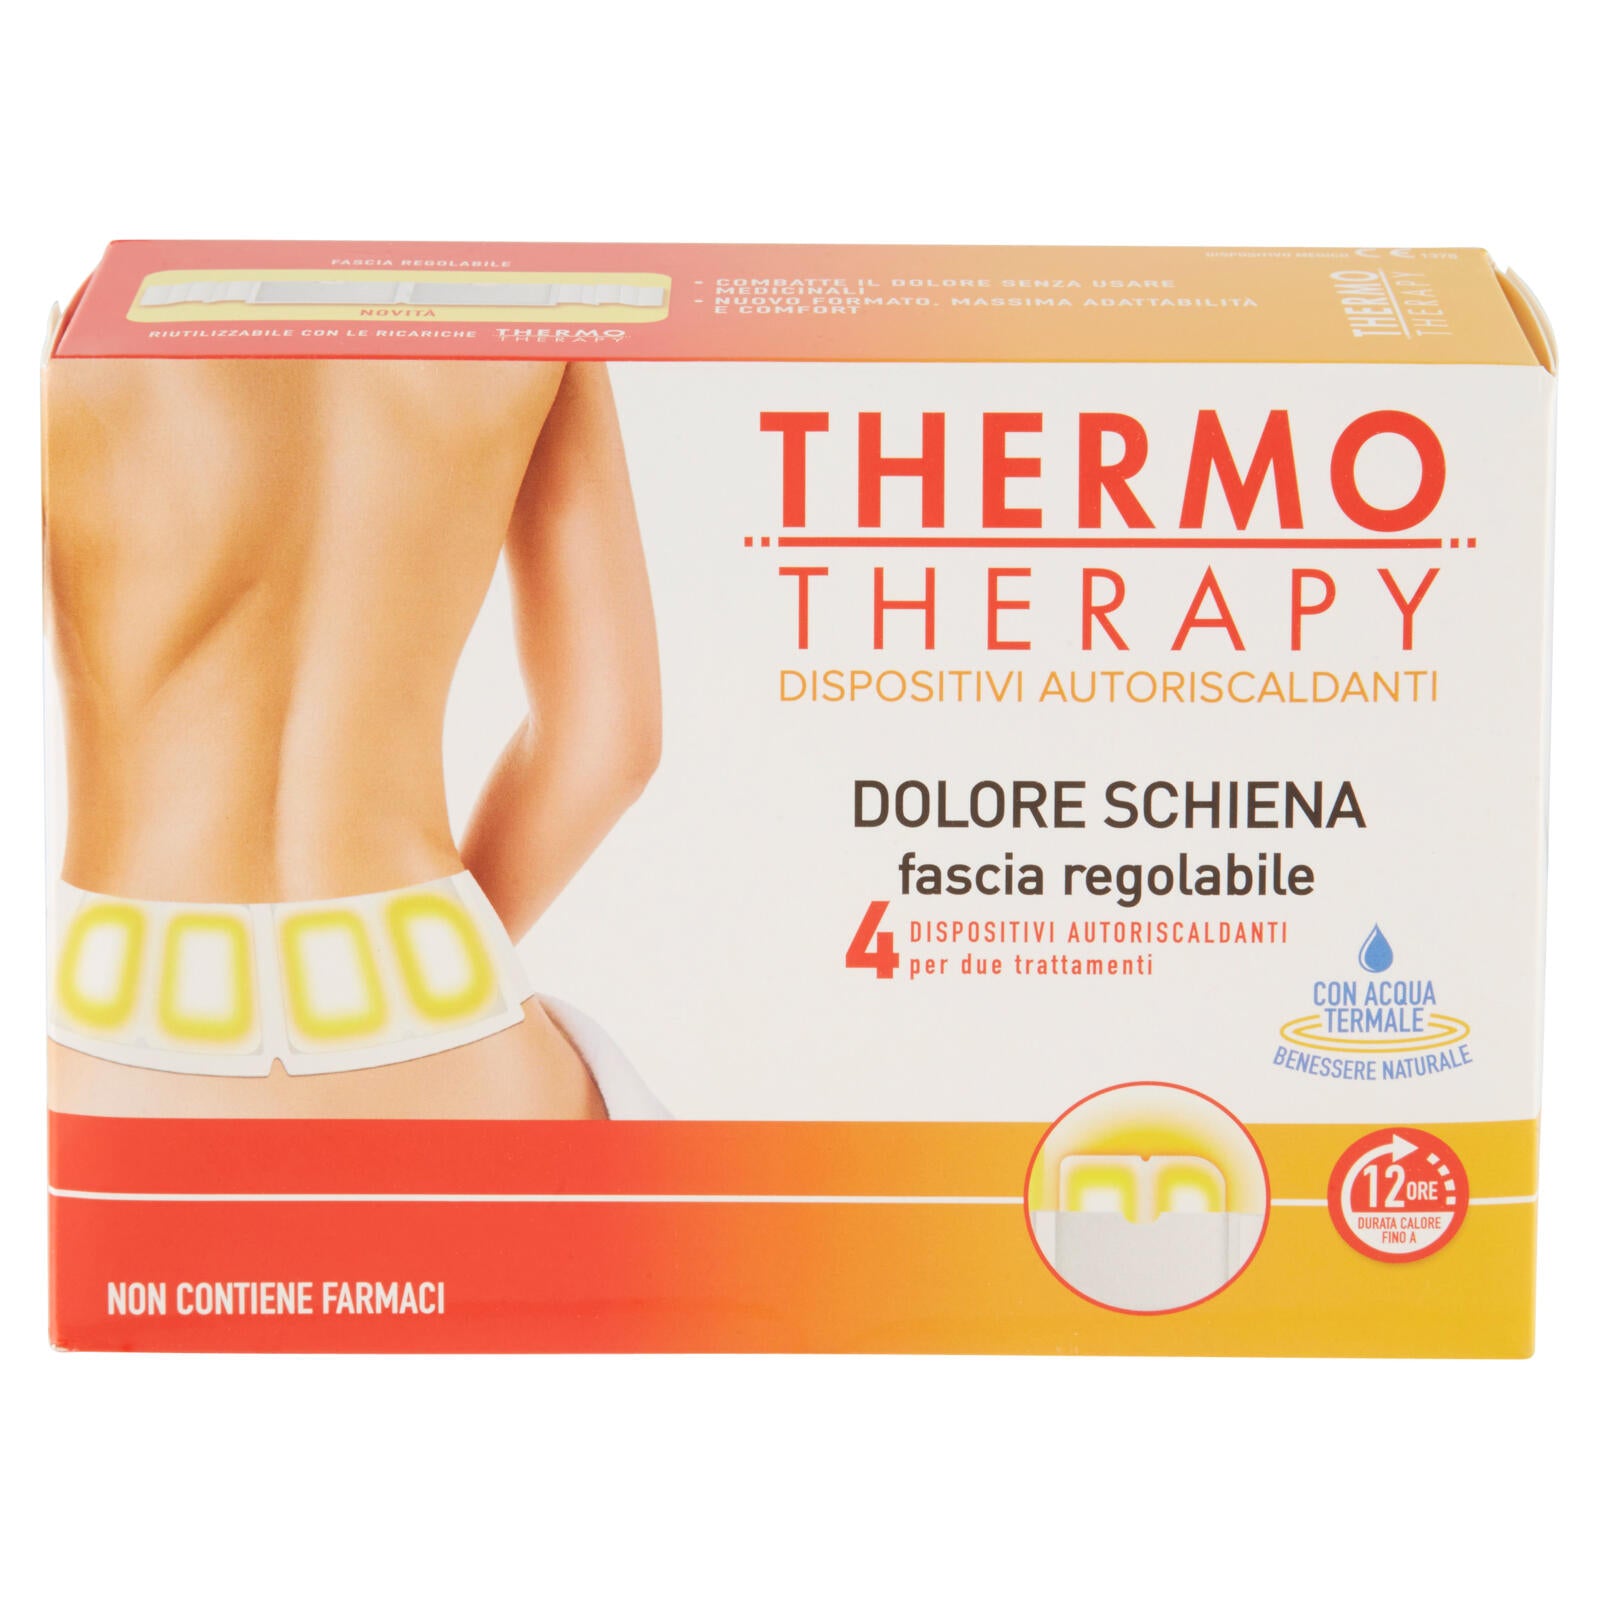 ThermoTherapy Dolore Schiena fascia regolabile ->